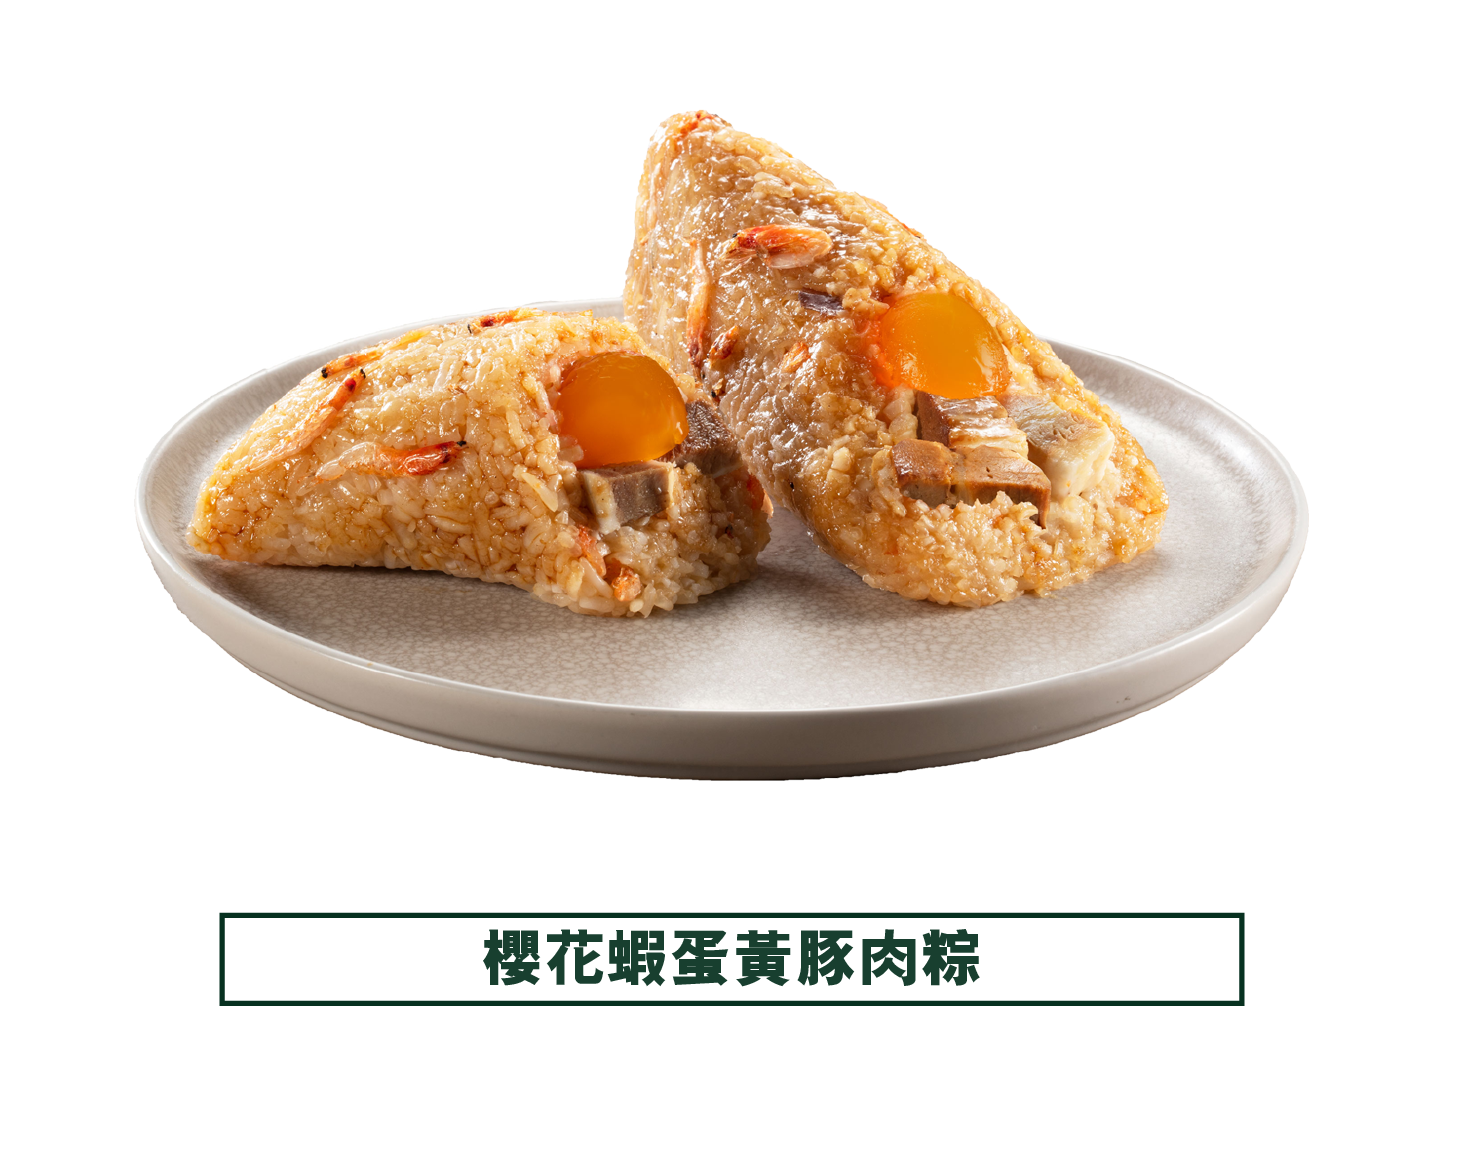 東海堂 | 櫻花蝦蛋黃豚肉粽